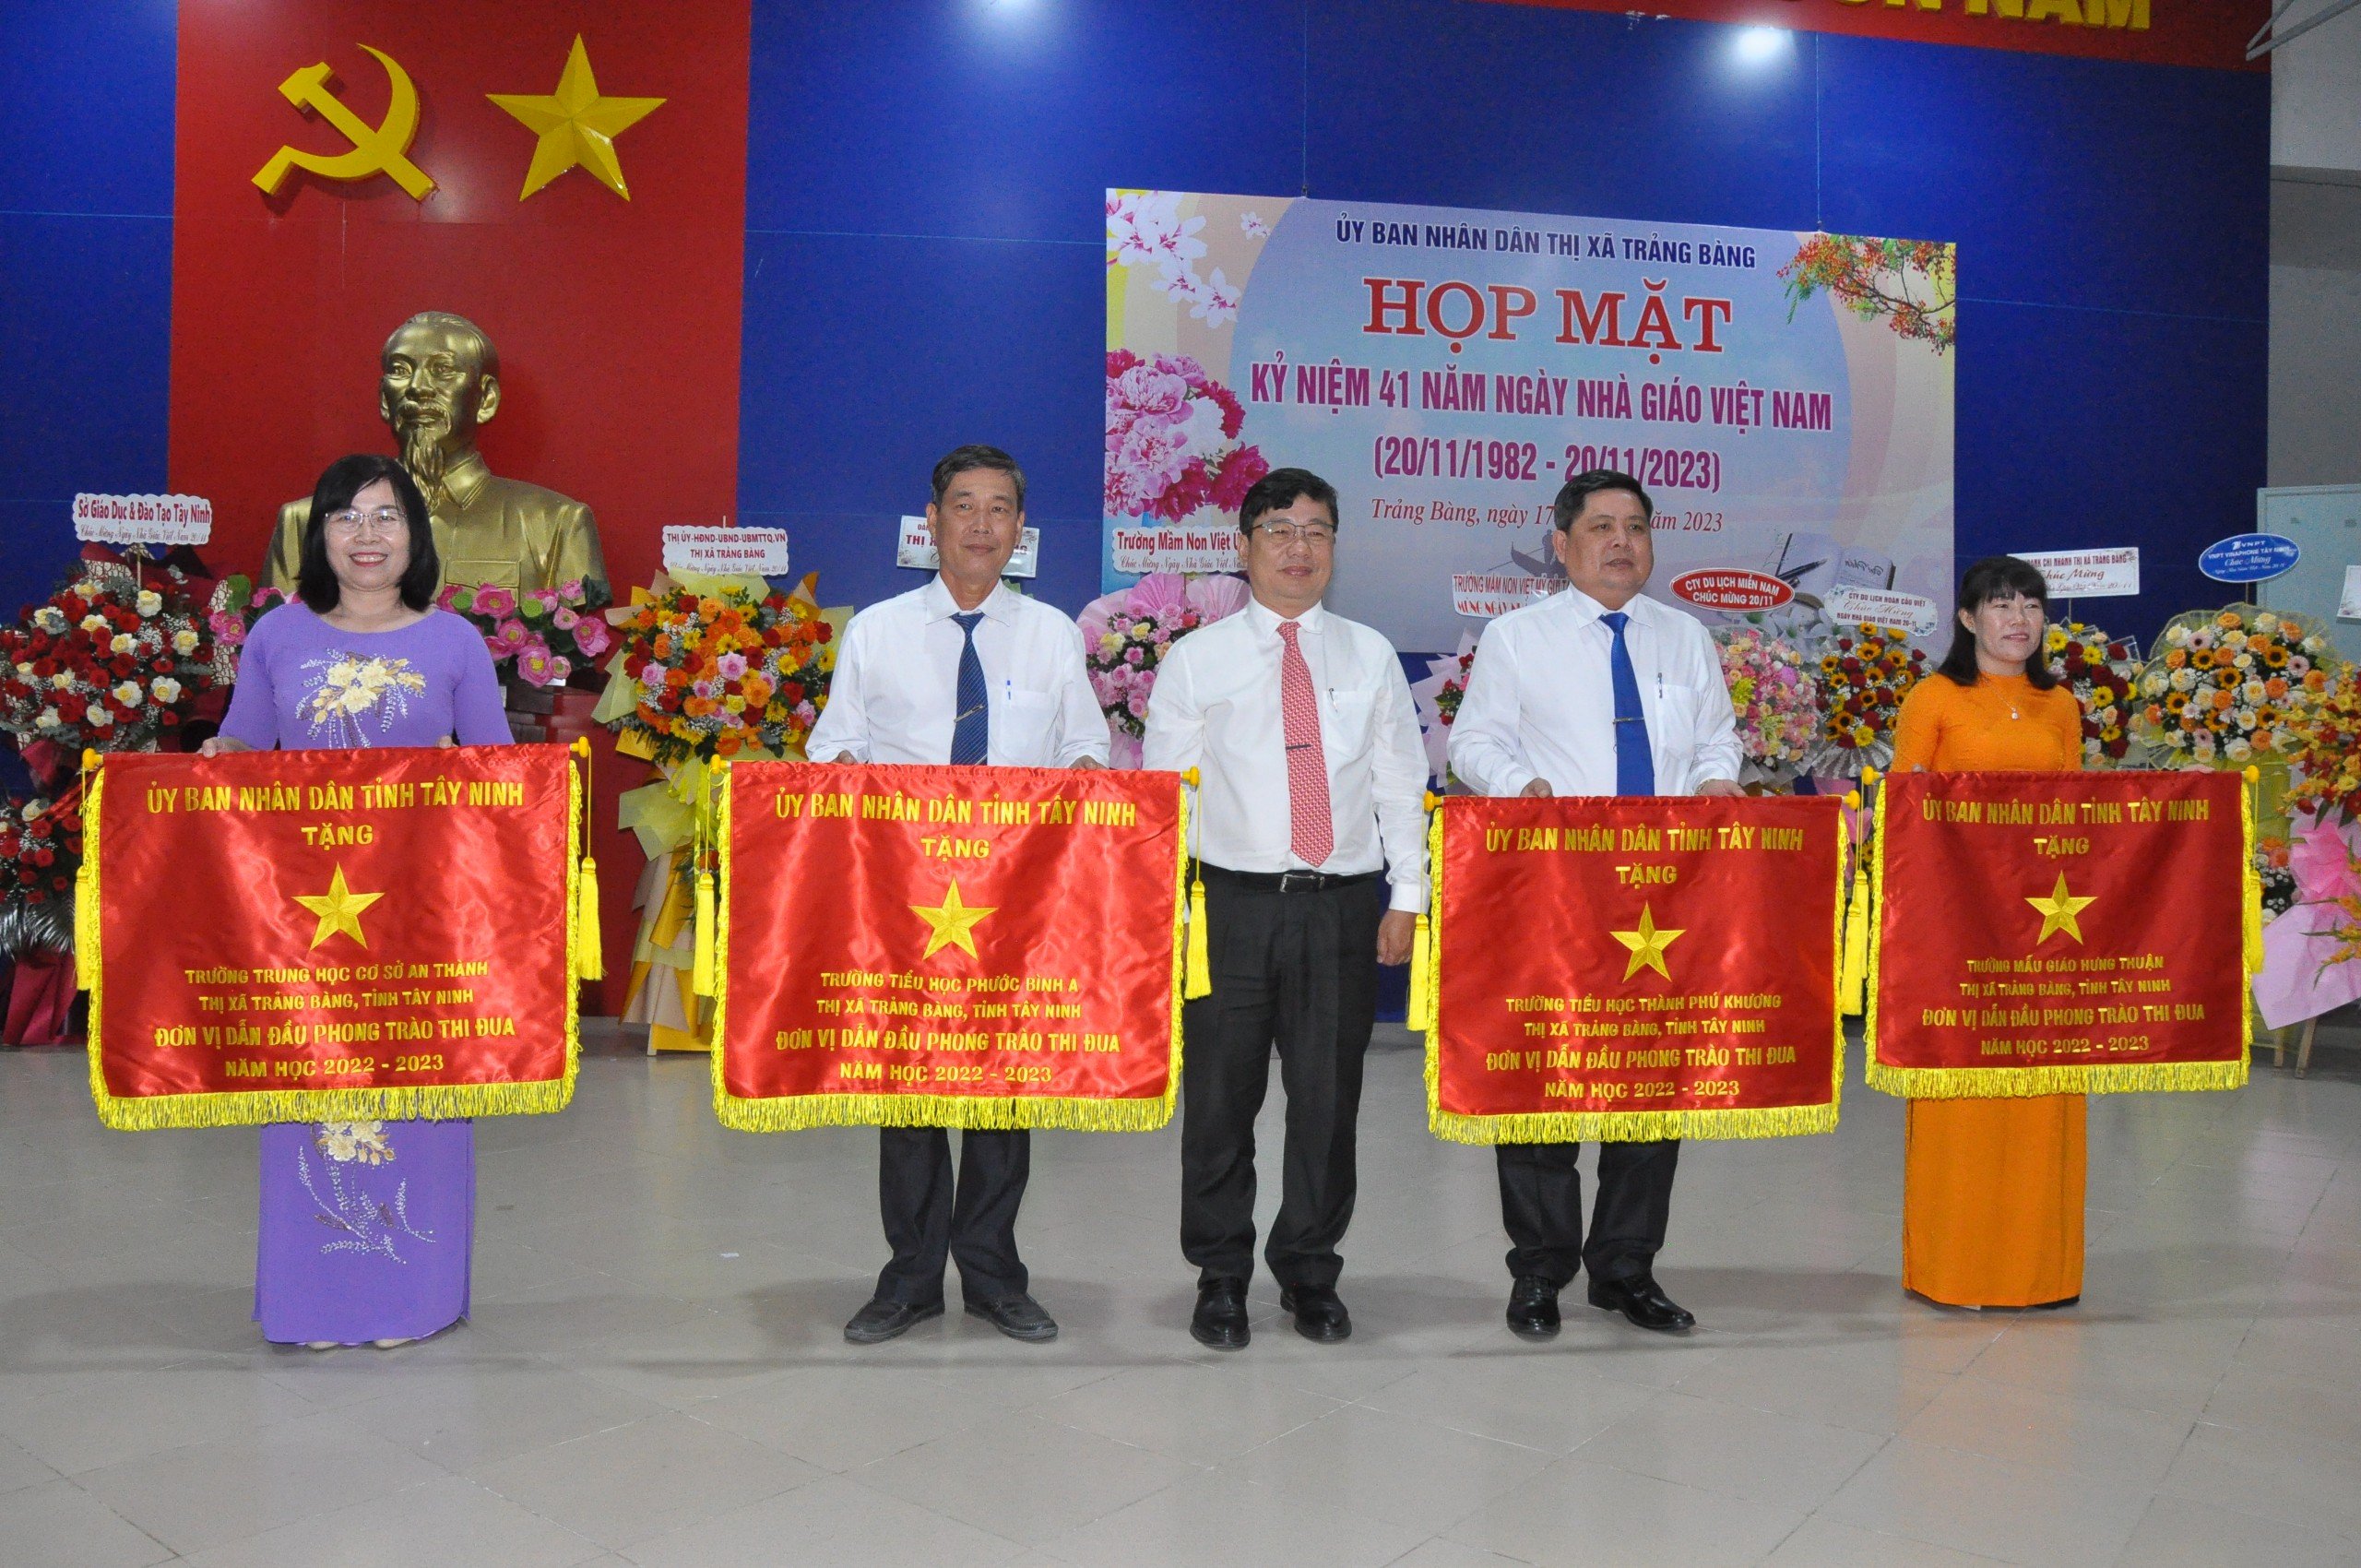 Đồng chí Bùi Tuấn Hải – Phó Giám đốc Sở Giáo dục và Đào tạo tỉnh trao cờ cho 4 tập thể có thành tích xuất sắc dẫn đầu phong trào thi đua